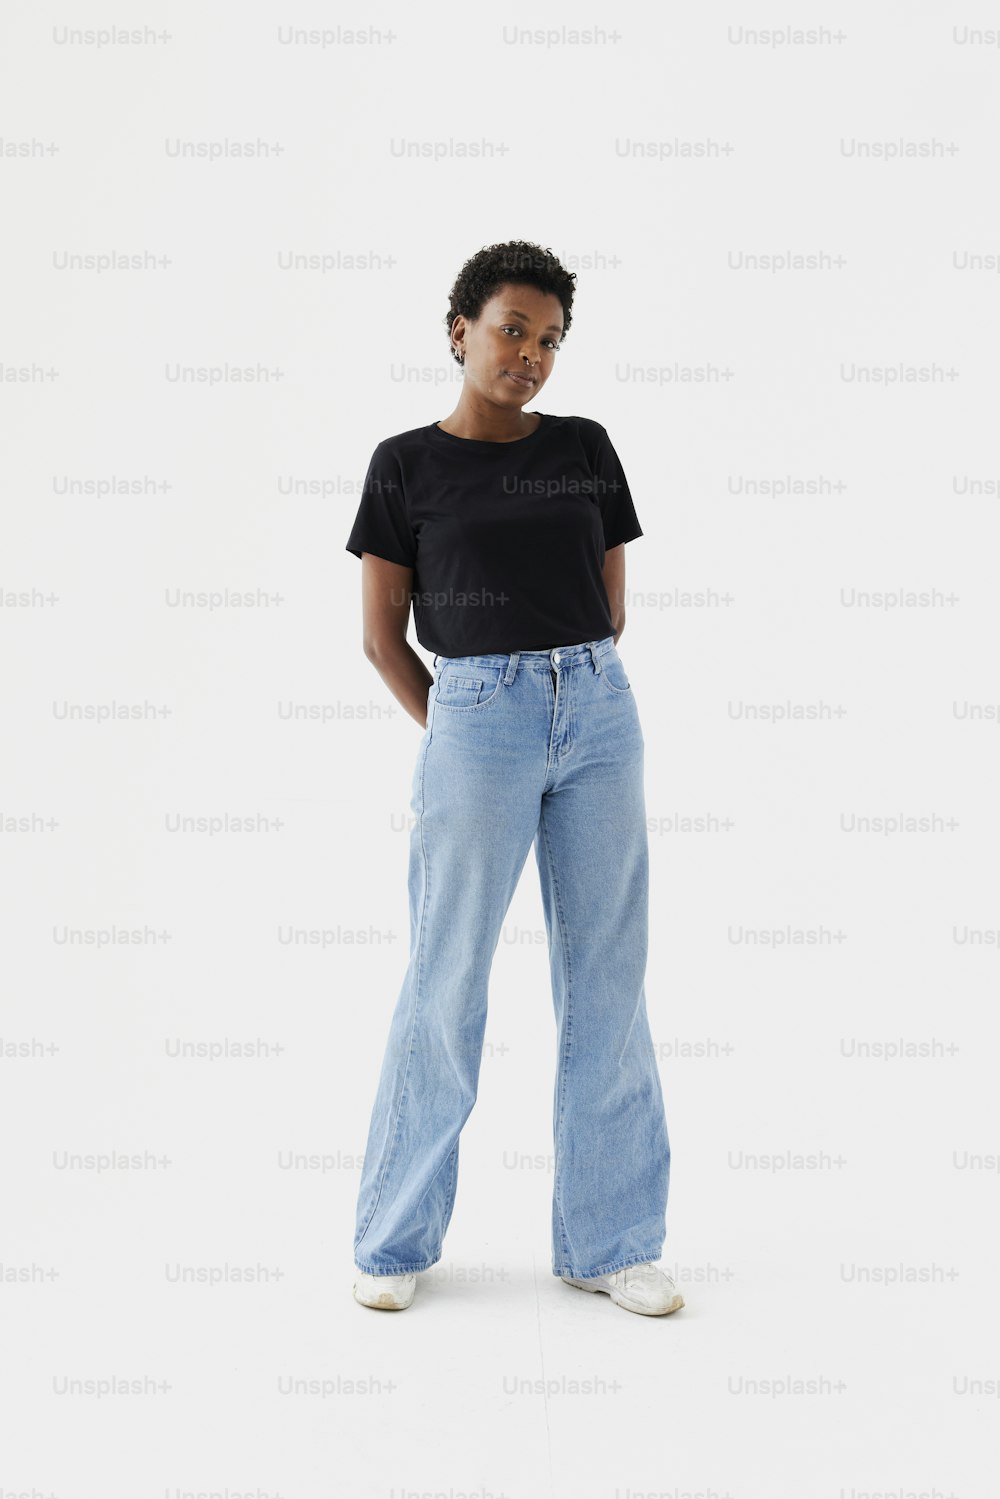 Eine Frau in schwarzem T-Shirt und hellblauen Jeans